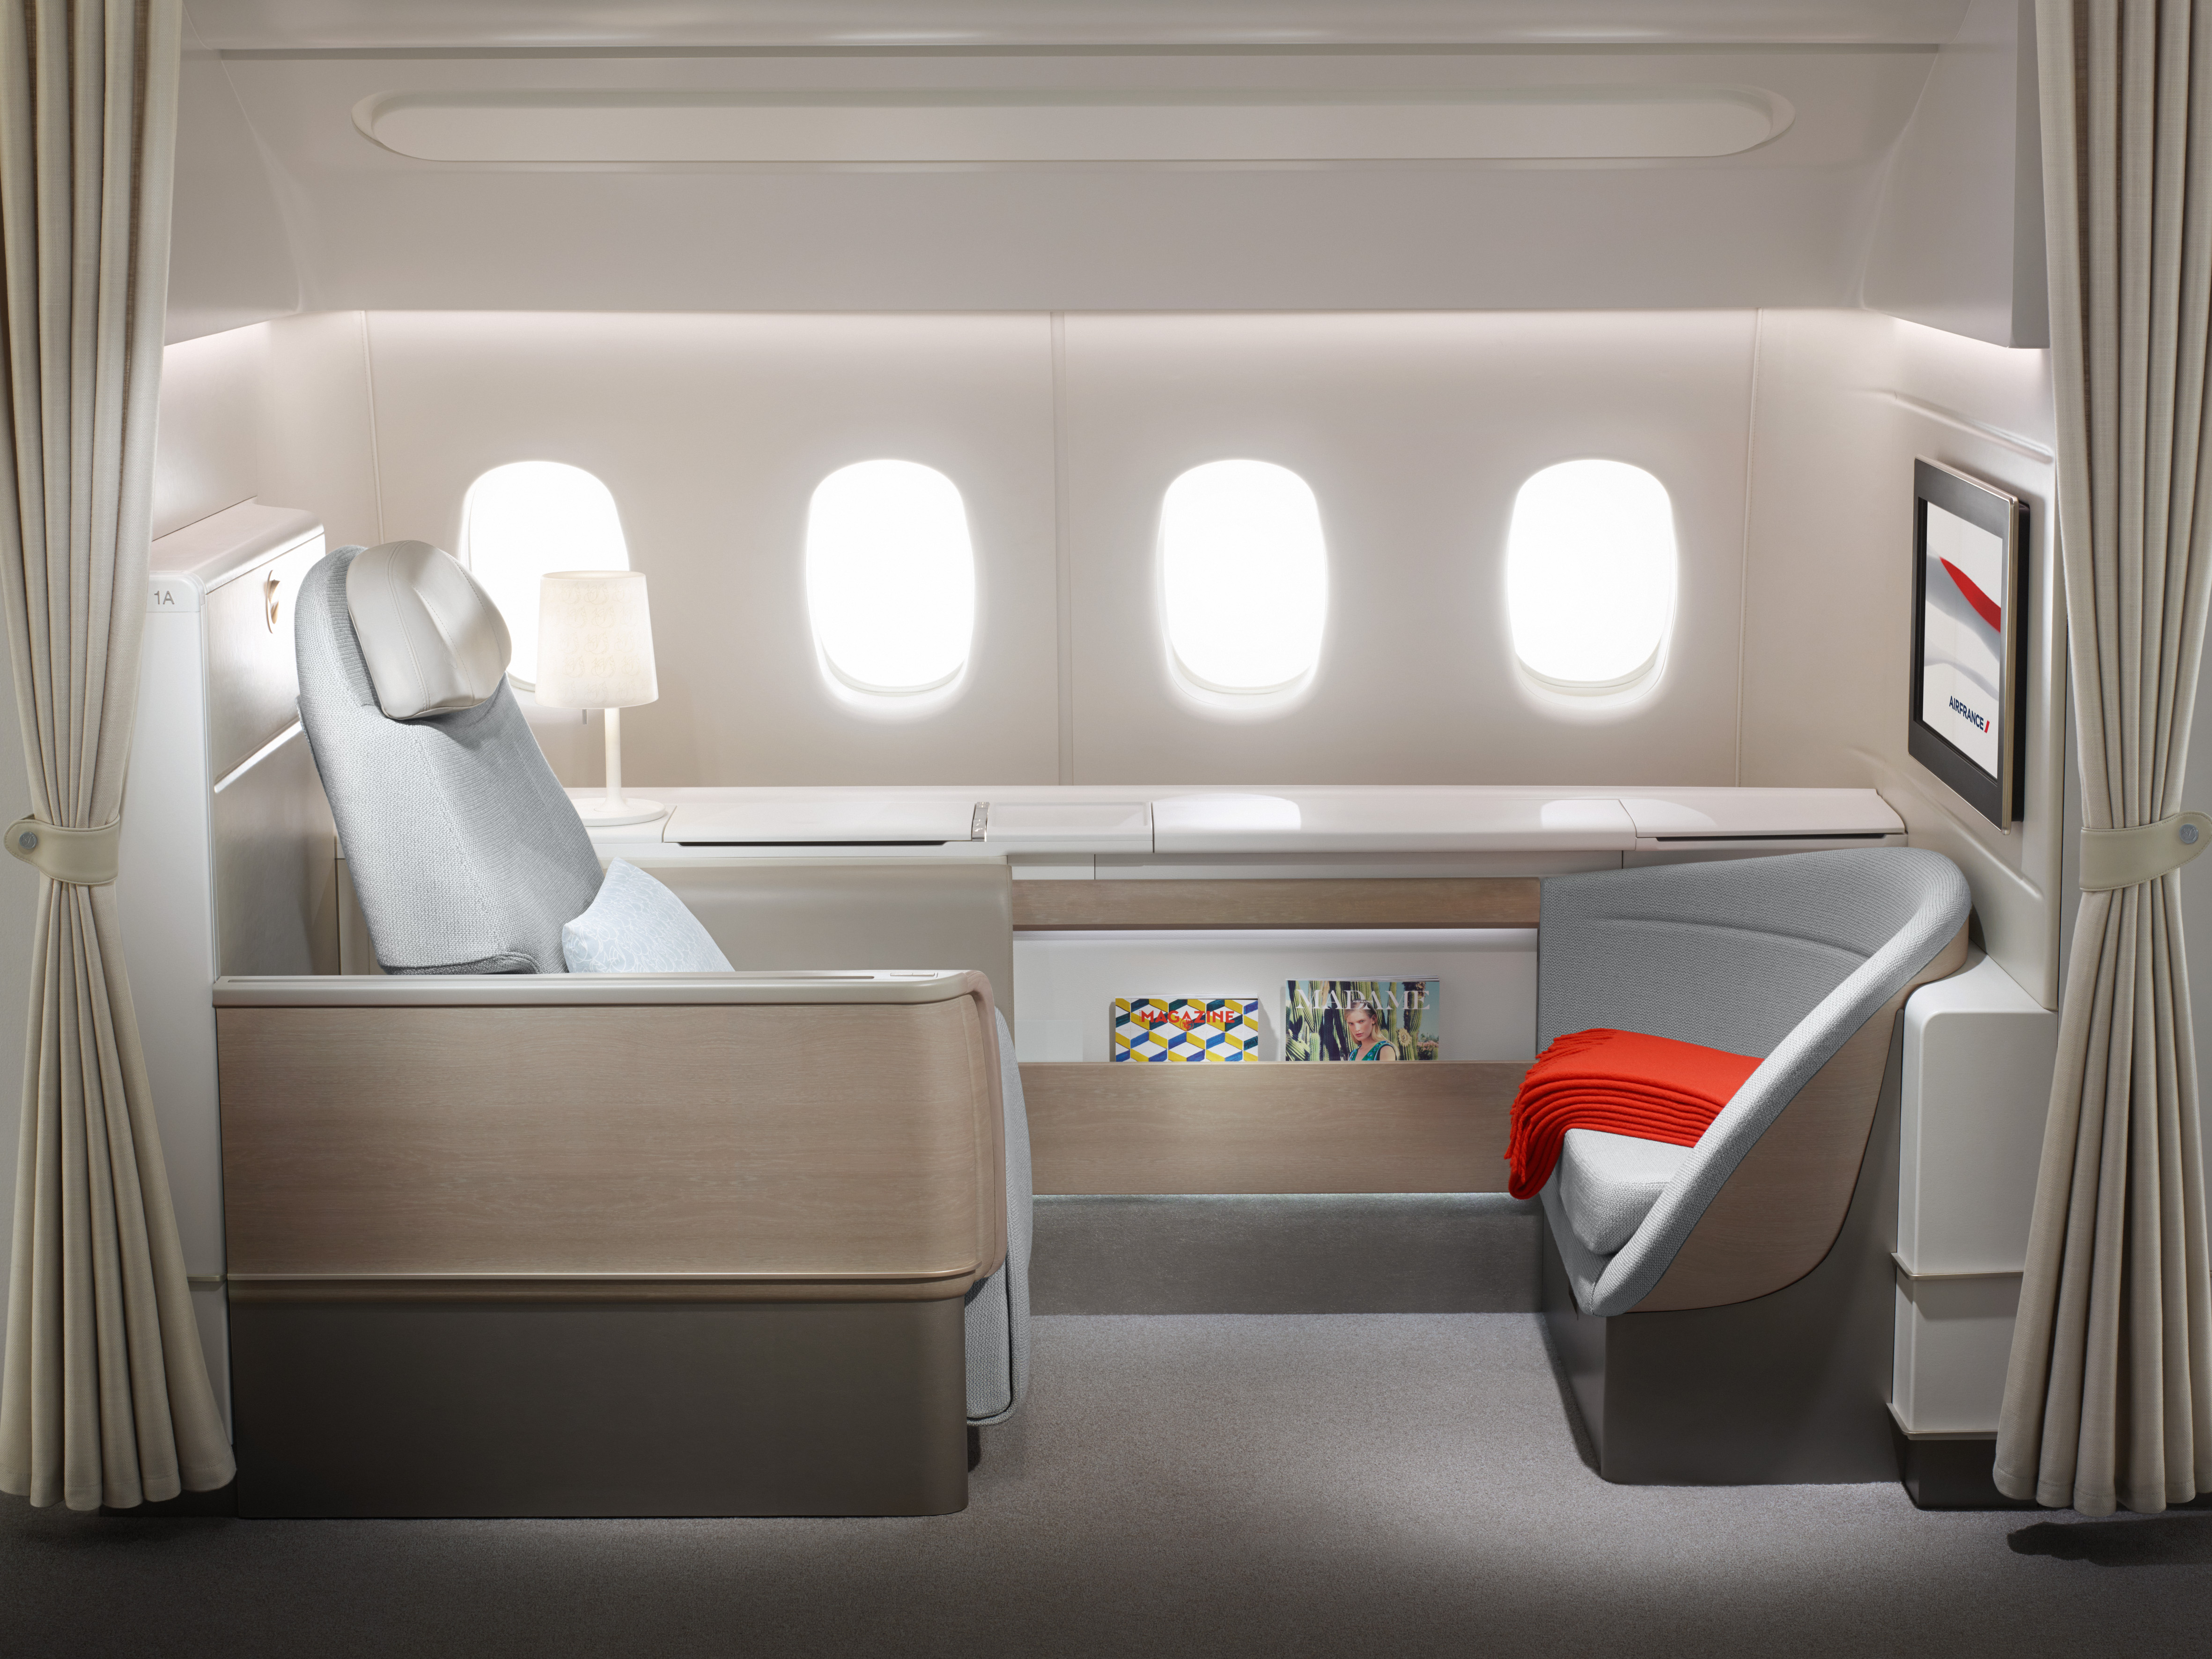 Представляем вашему вниманию обновленный первый класс Air France La Première.